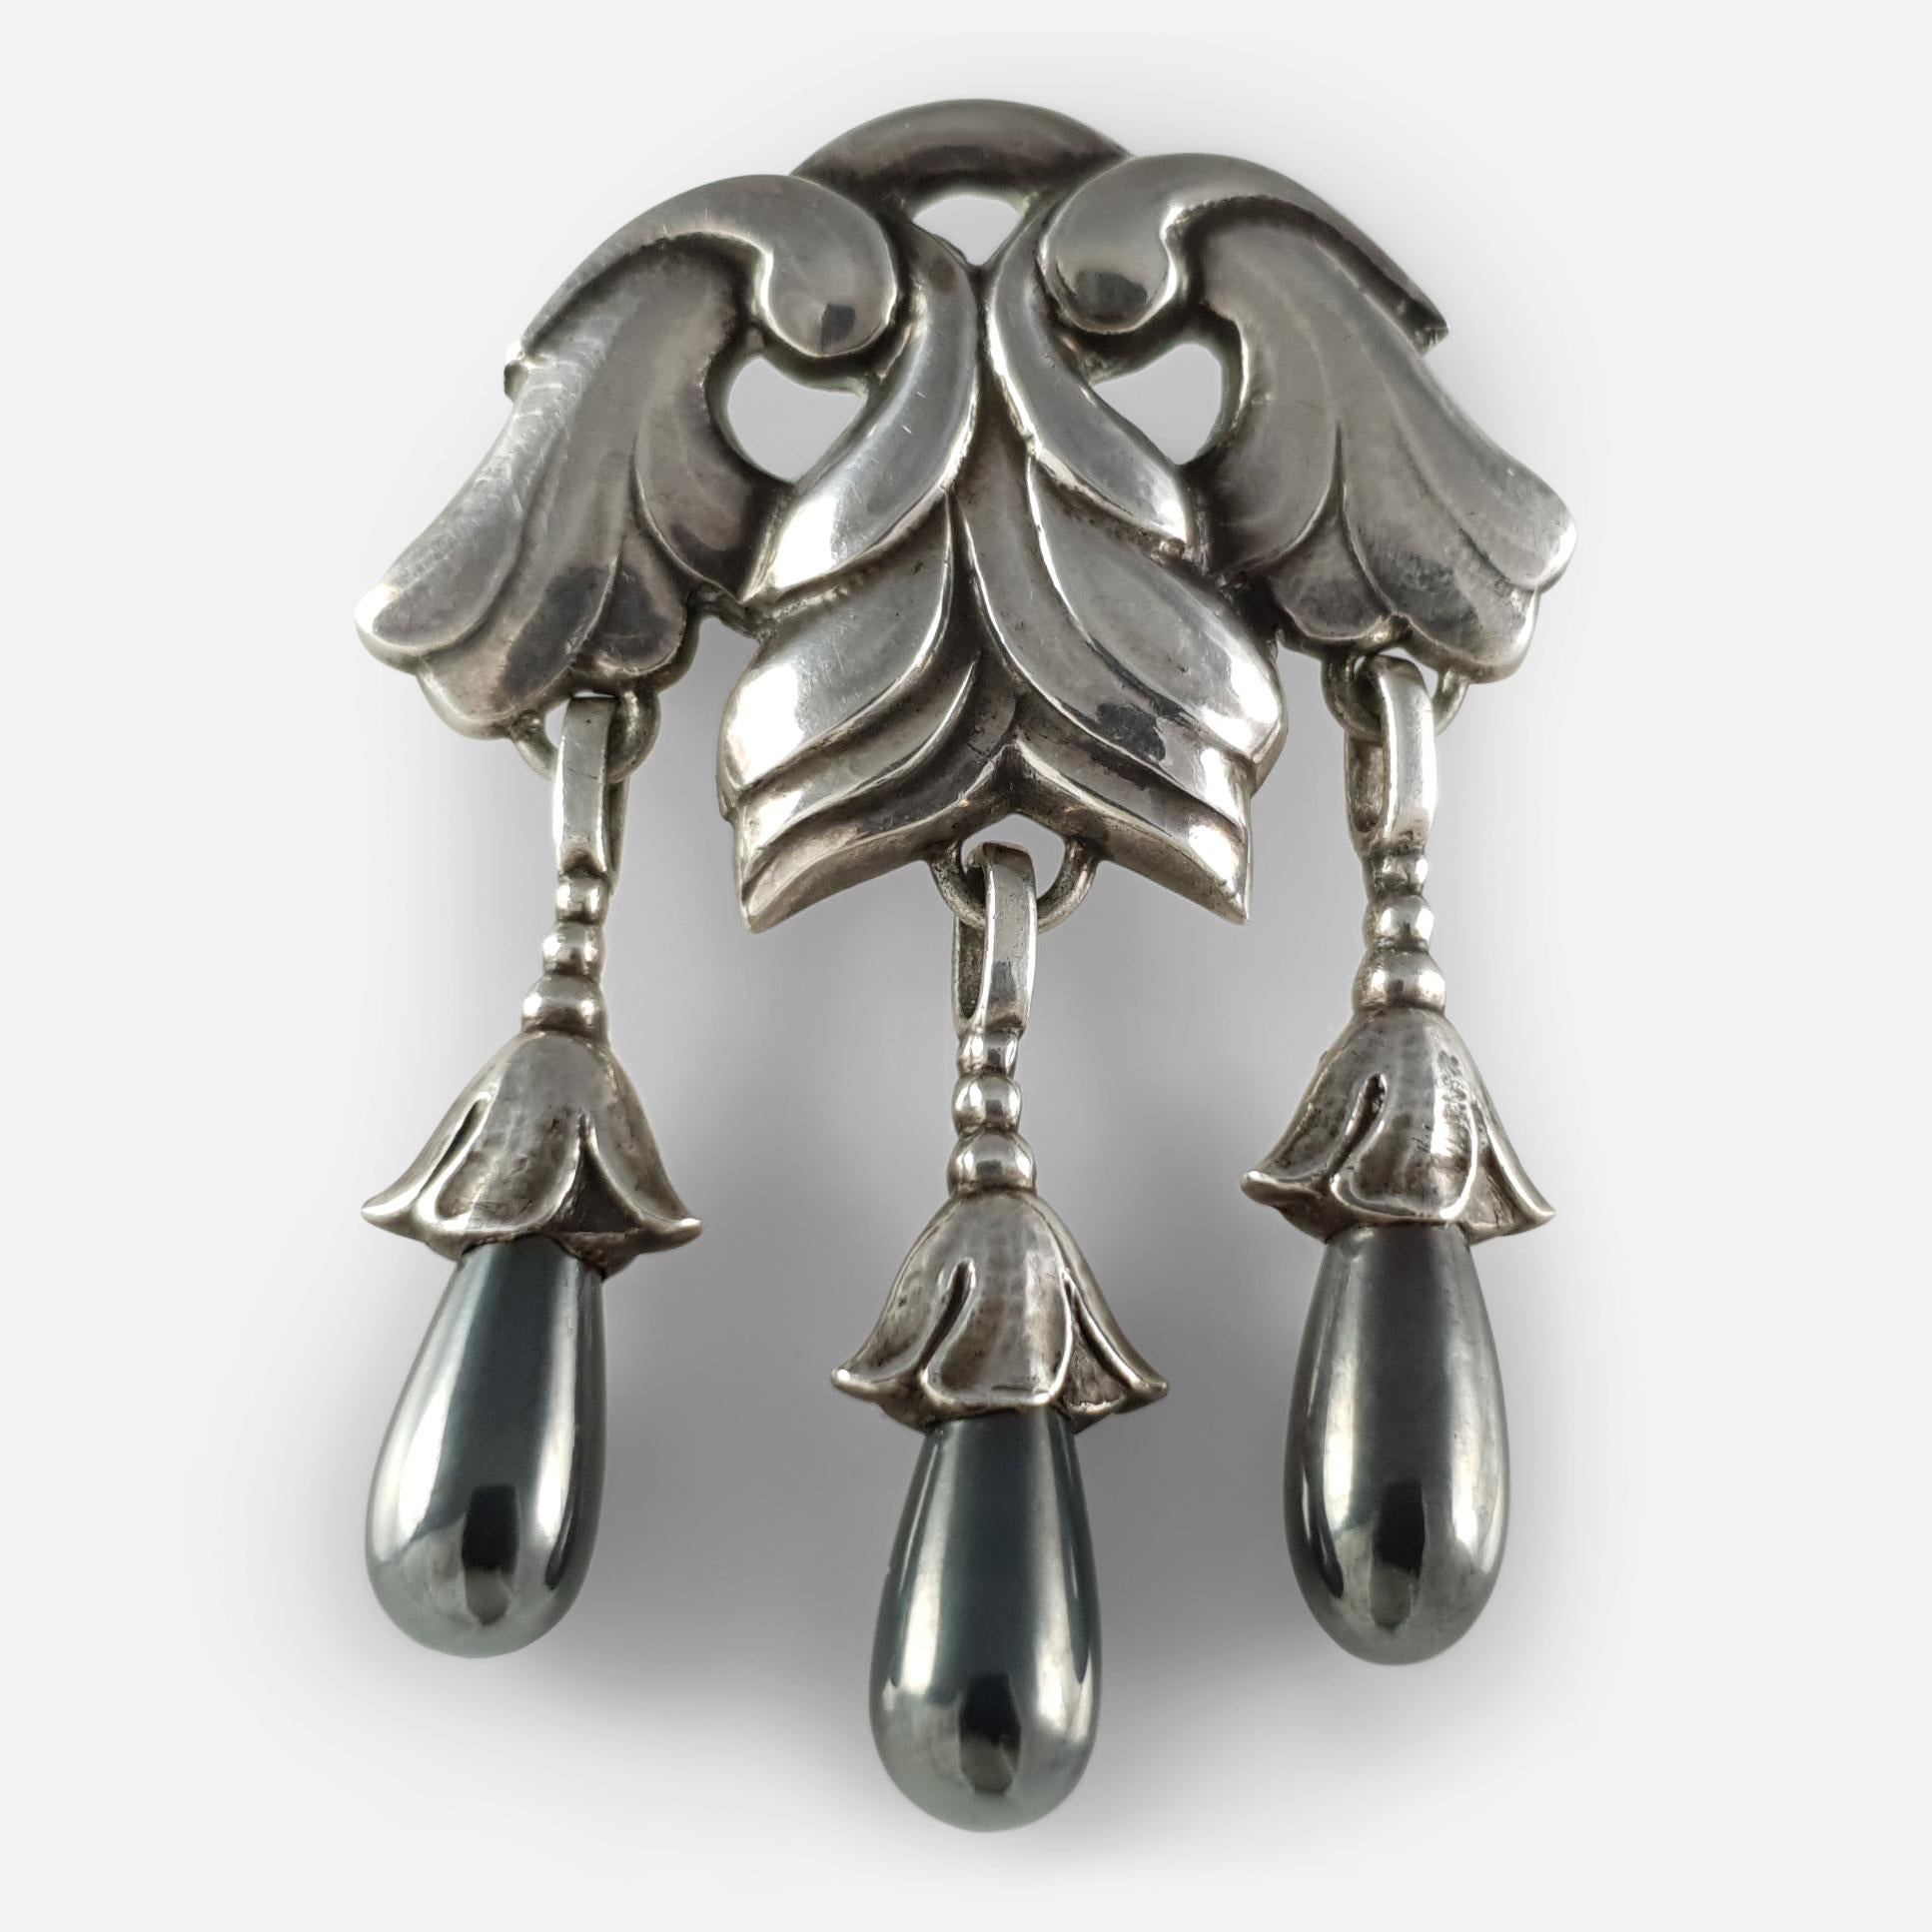 Silber- und Hämatitbrosche #132 von Georg Jensen, um 1915-1930.  Der obere Teil ist mit Silberblättern verziert und trägt drei polierte Hämatit-Tropfen. 

Die Brosche ist mit der GI-Marke innerhalb eines Perlenkreises versehen, die von 1915-1930